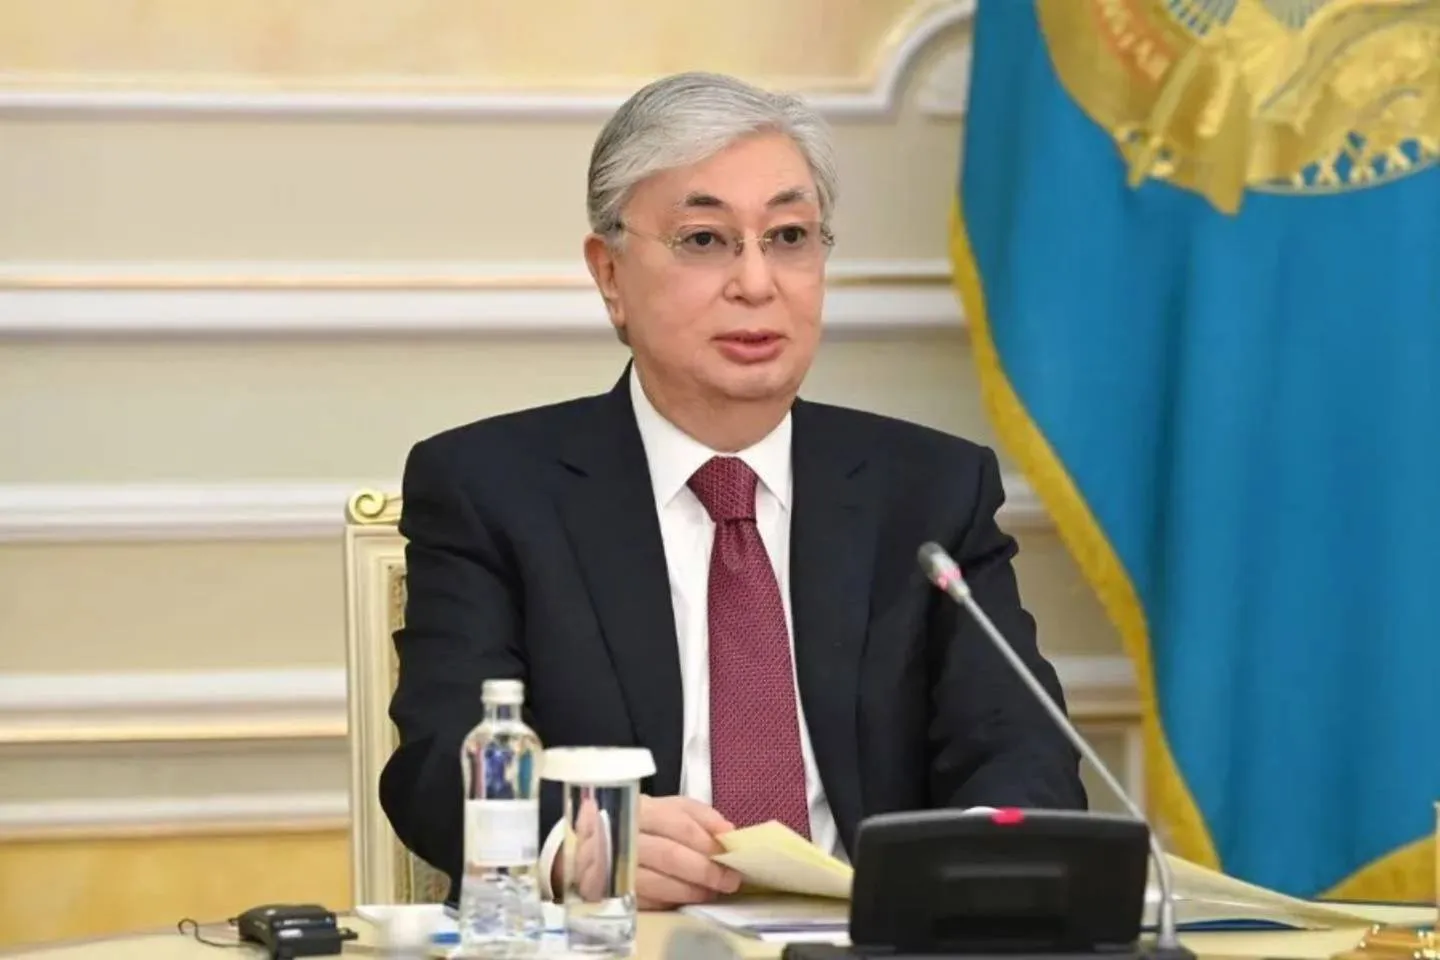 Новости Казахстана / Общество в Казахстане / Президент Казахстана снова заговорил о повышении доходов населения страны